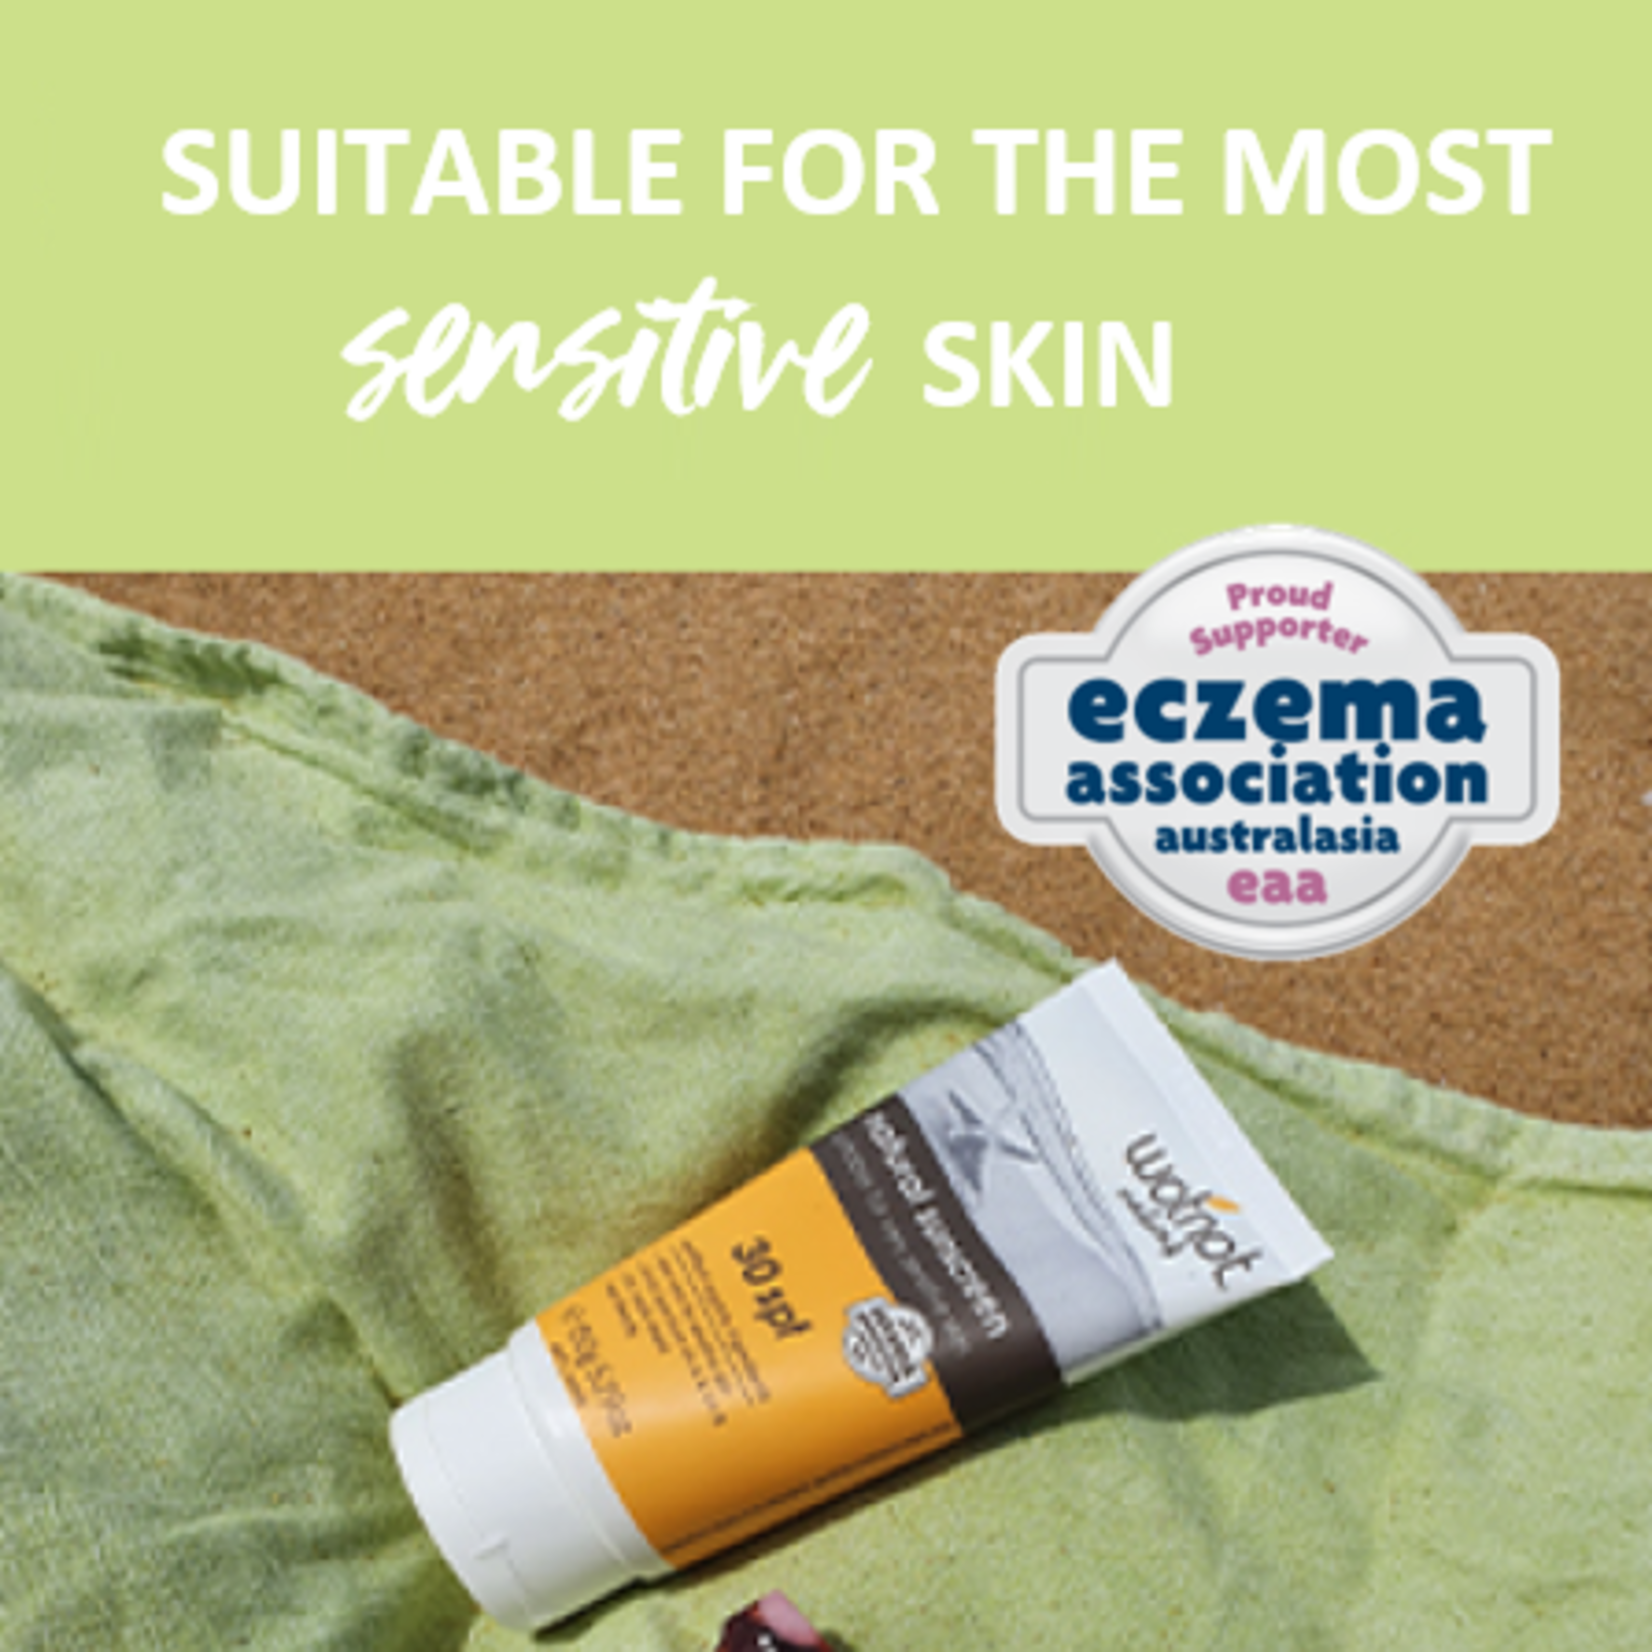 Wotnot Wotnot Natural Sunscreen 30SPF